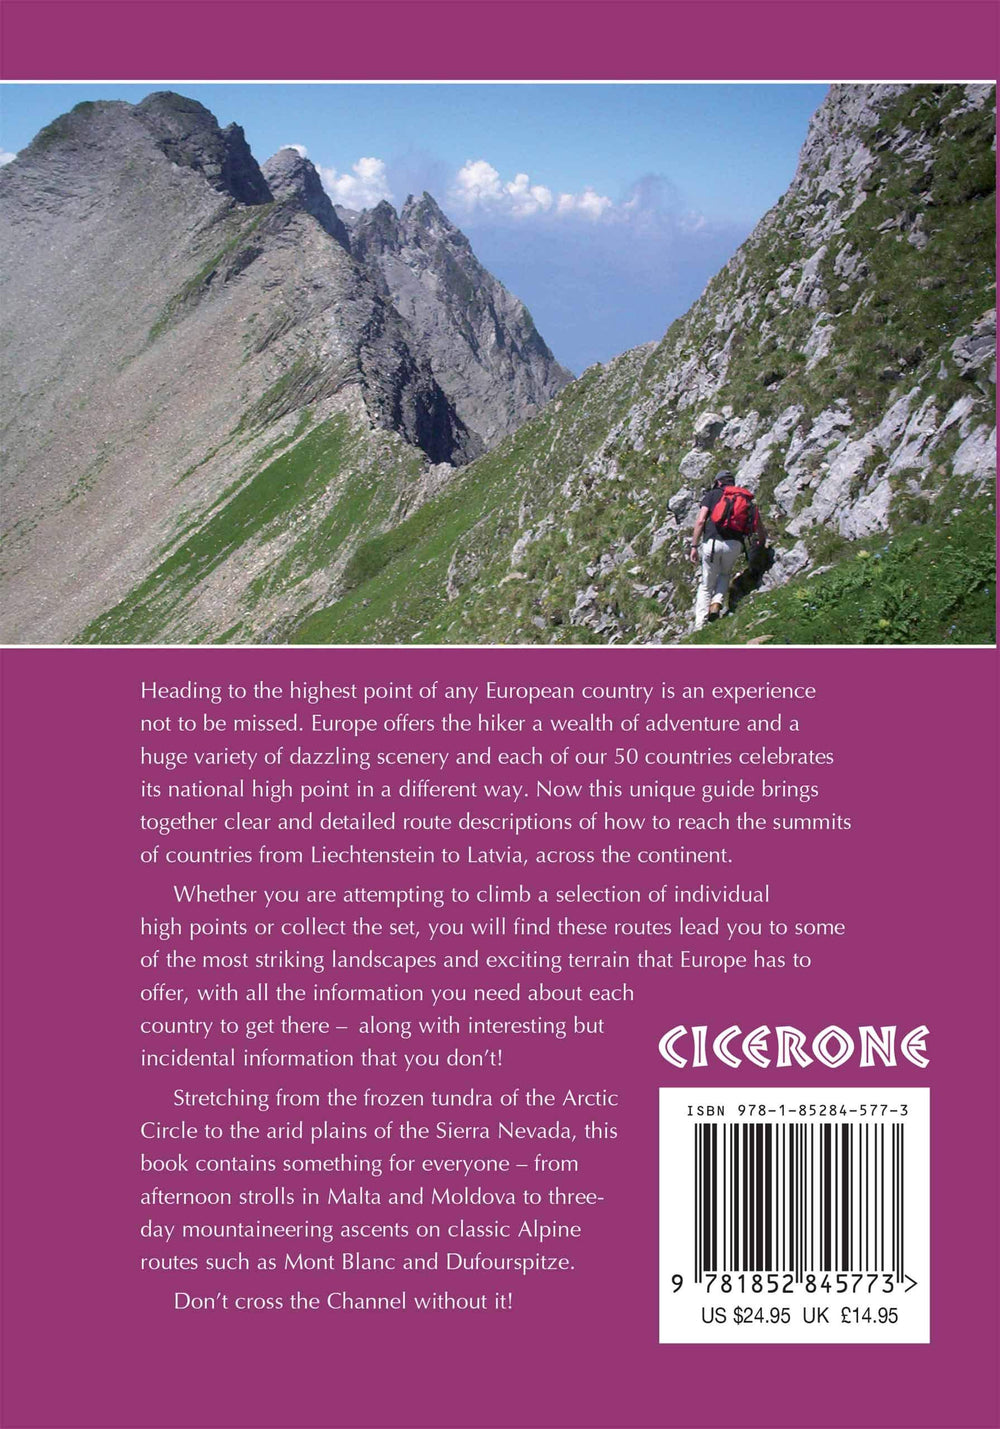 Guide de randonnées (en anglais) - Europe's high points | Cicerone guide de randonnée Cicerone 